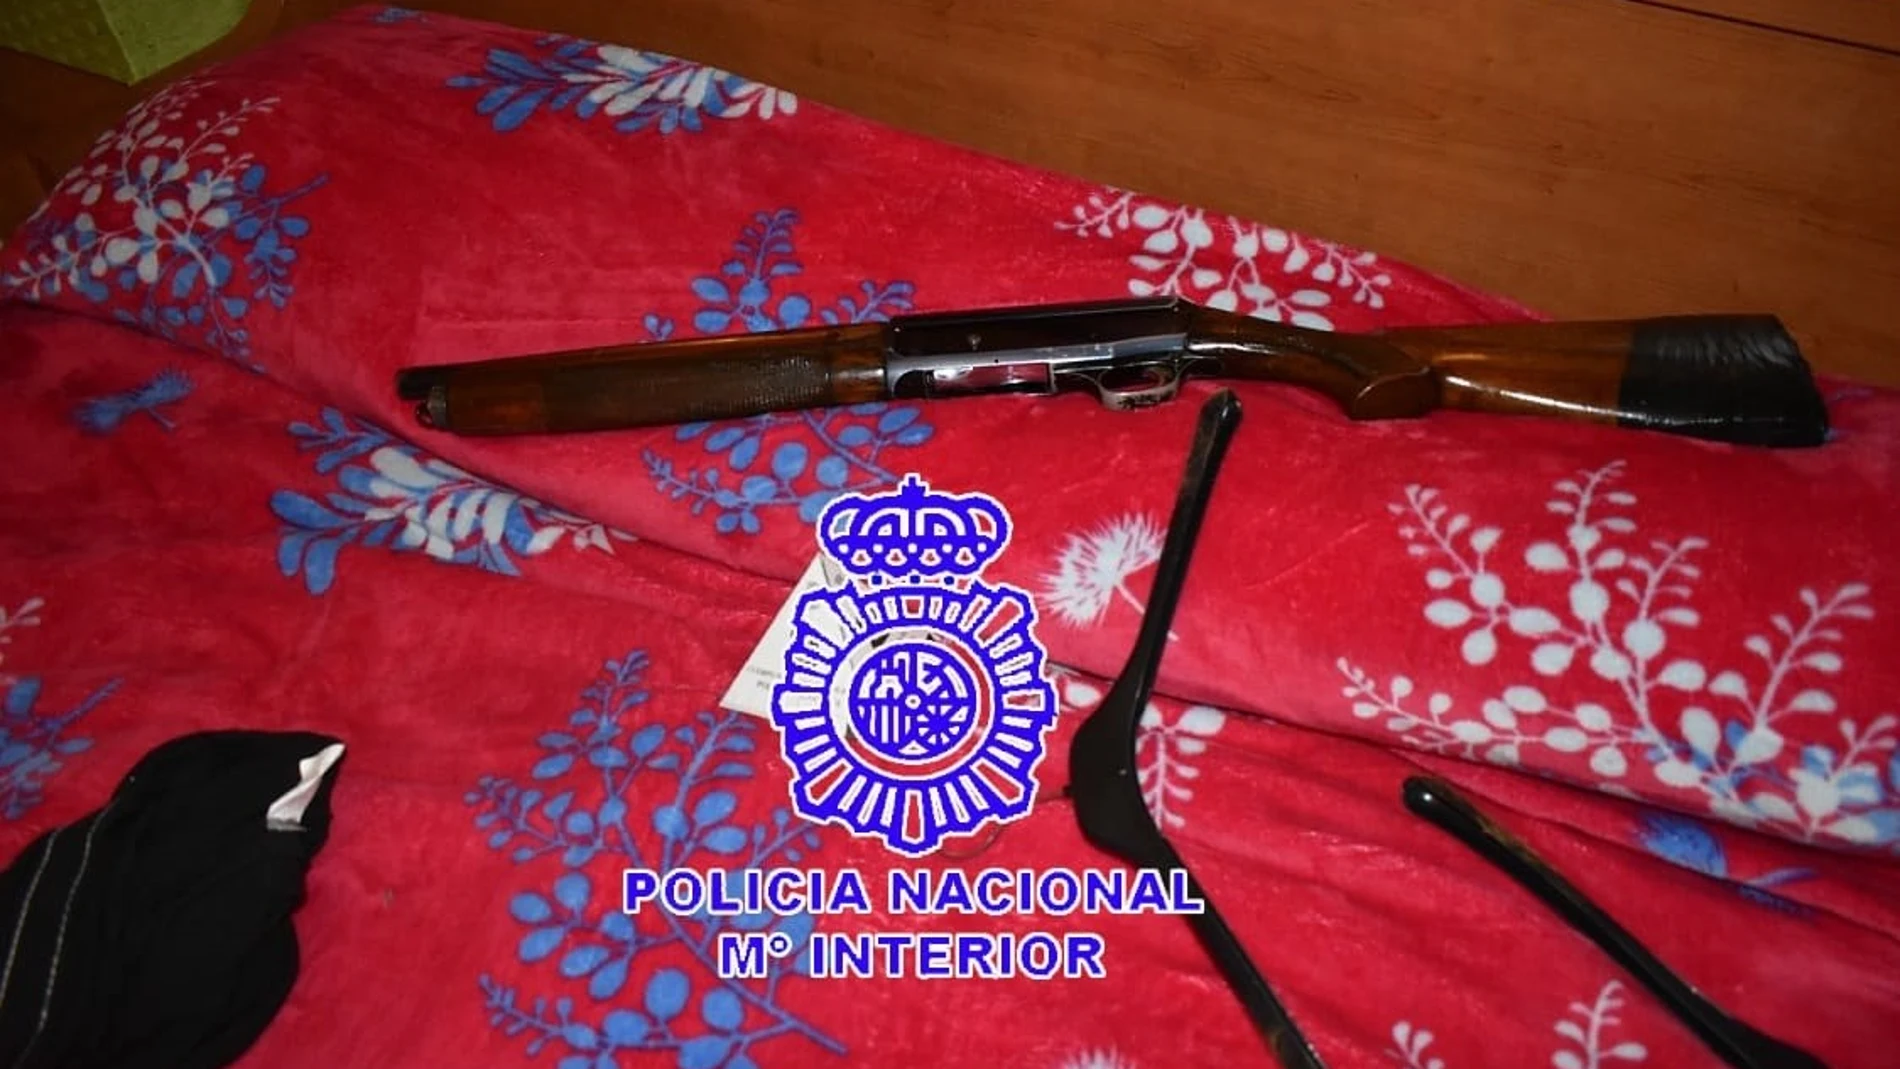 El arma recuperada por la Policía Nacional usada en el altercado en Valladolid